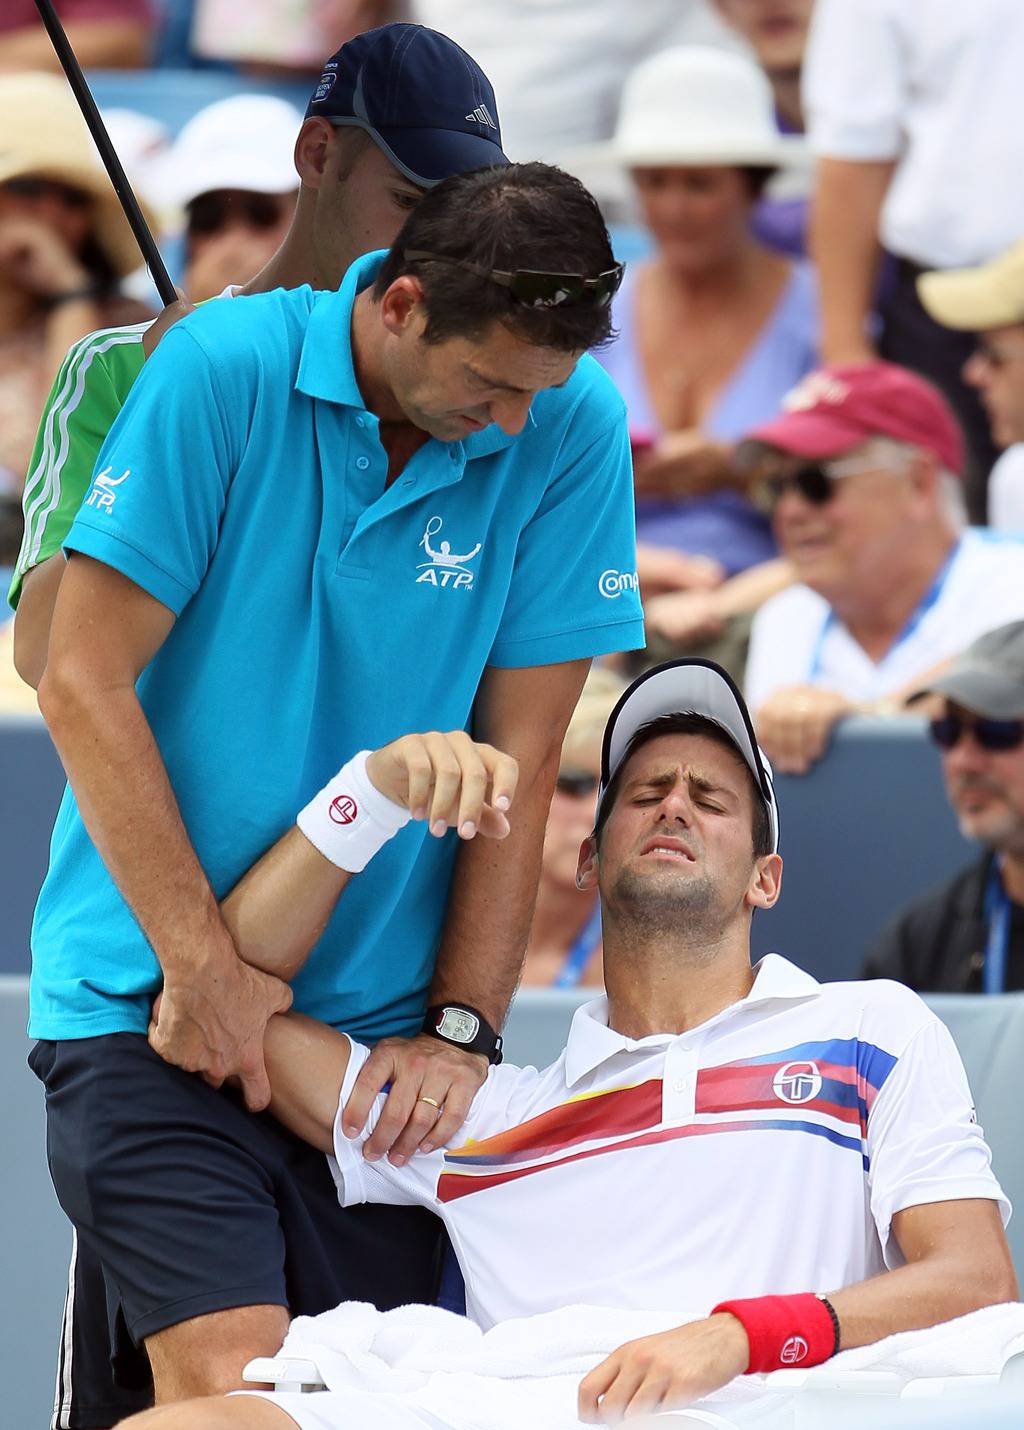 Ozljeda ramena: Novak gubio pa je predao Murrayu finale